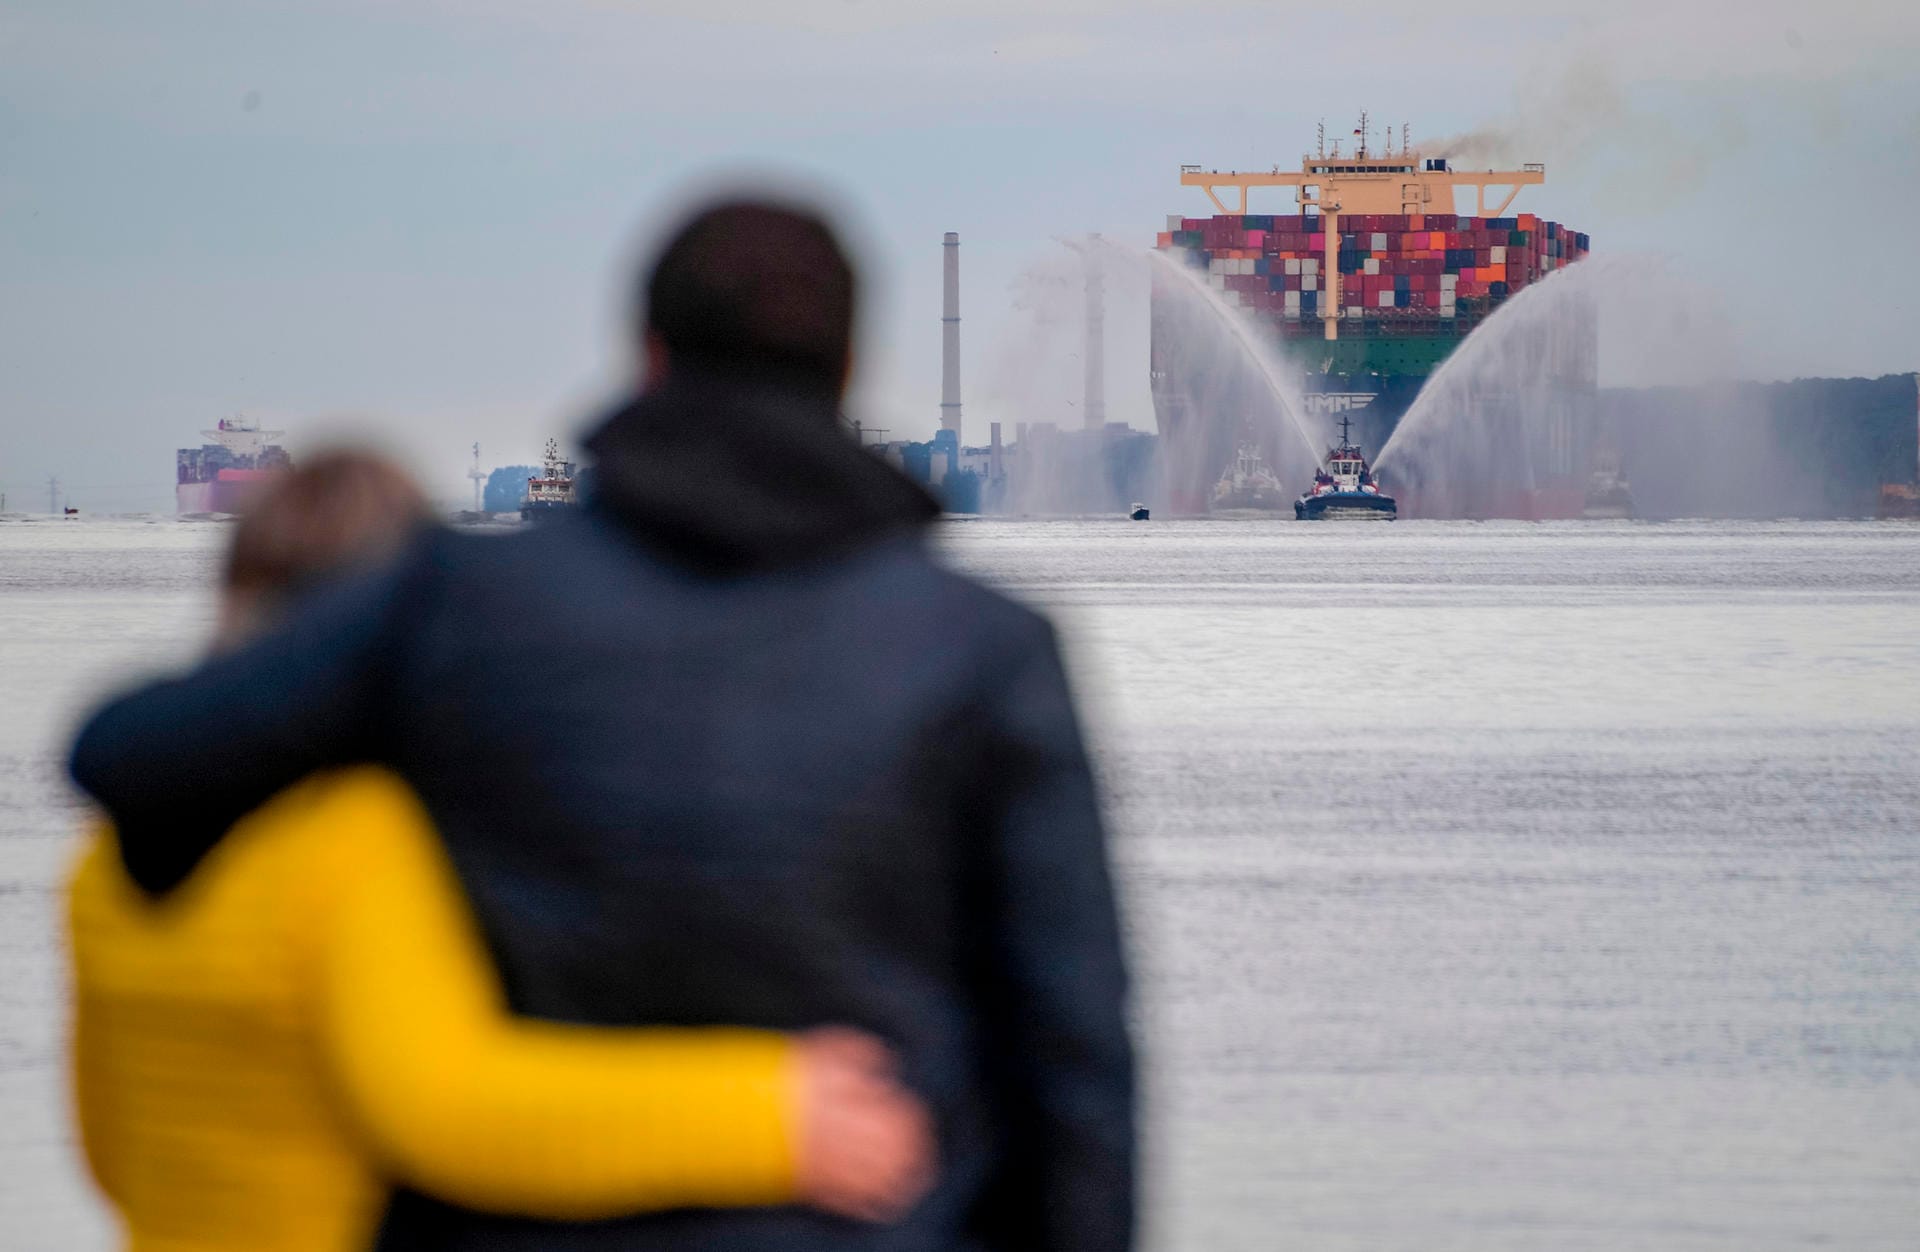 Der 400 Meter lange Megafrachter läuft in den Hafen ein: Am Mittwoch gegen 14 Uhr wird die "HMM Algeciras" Hamburg laut Plan wieder verlassen.